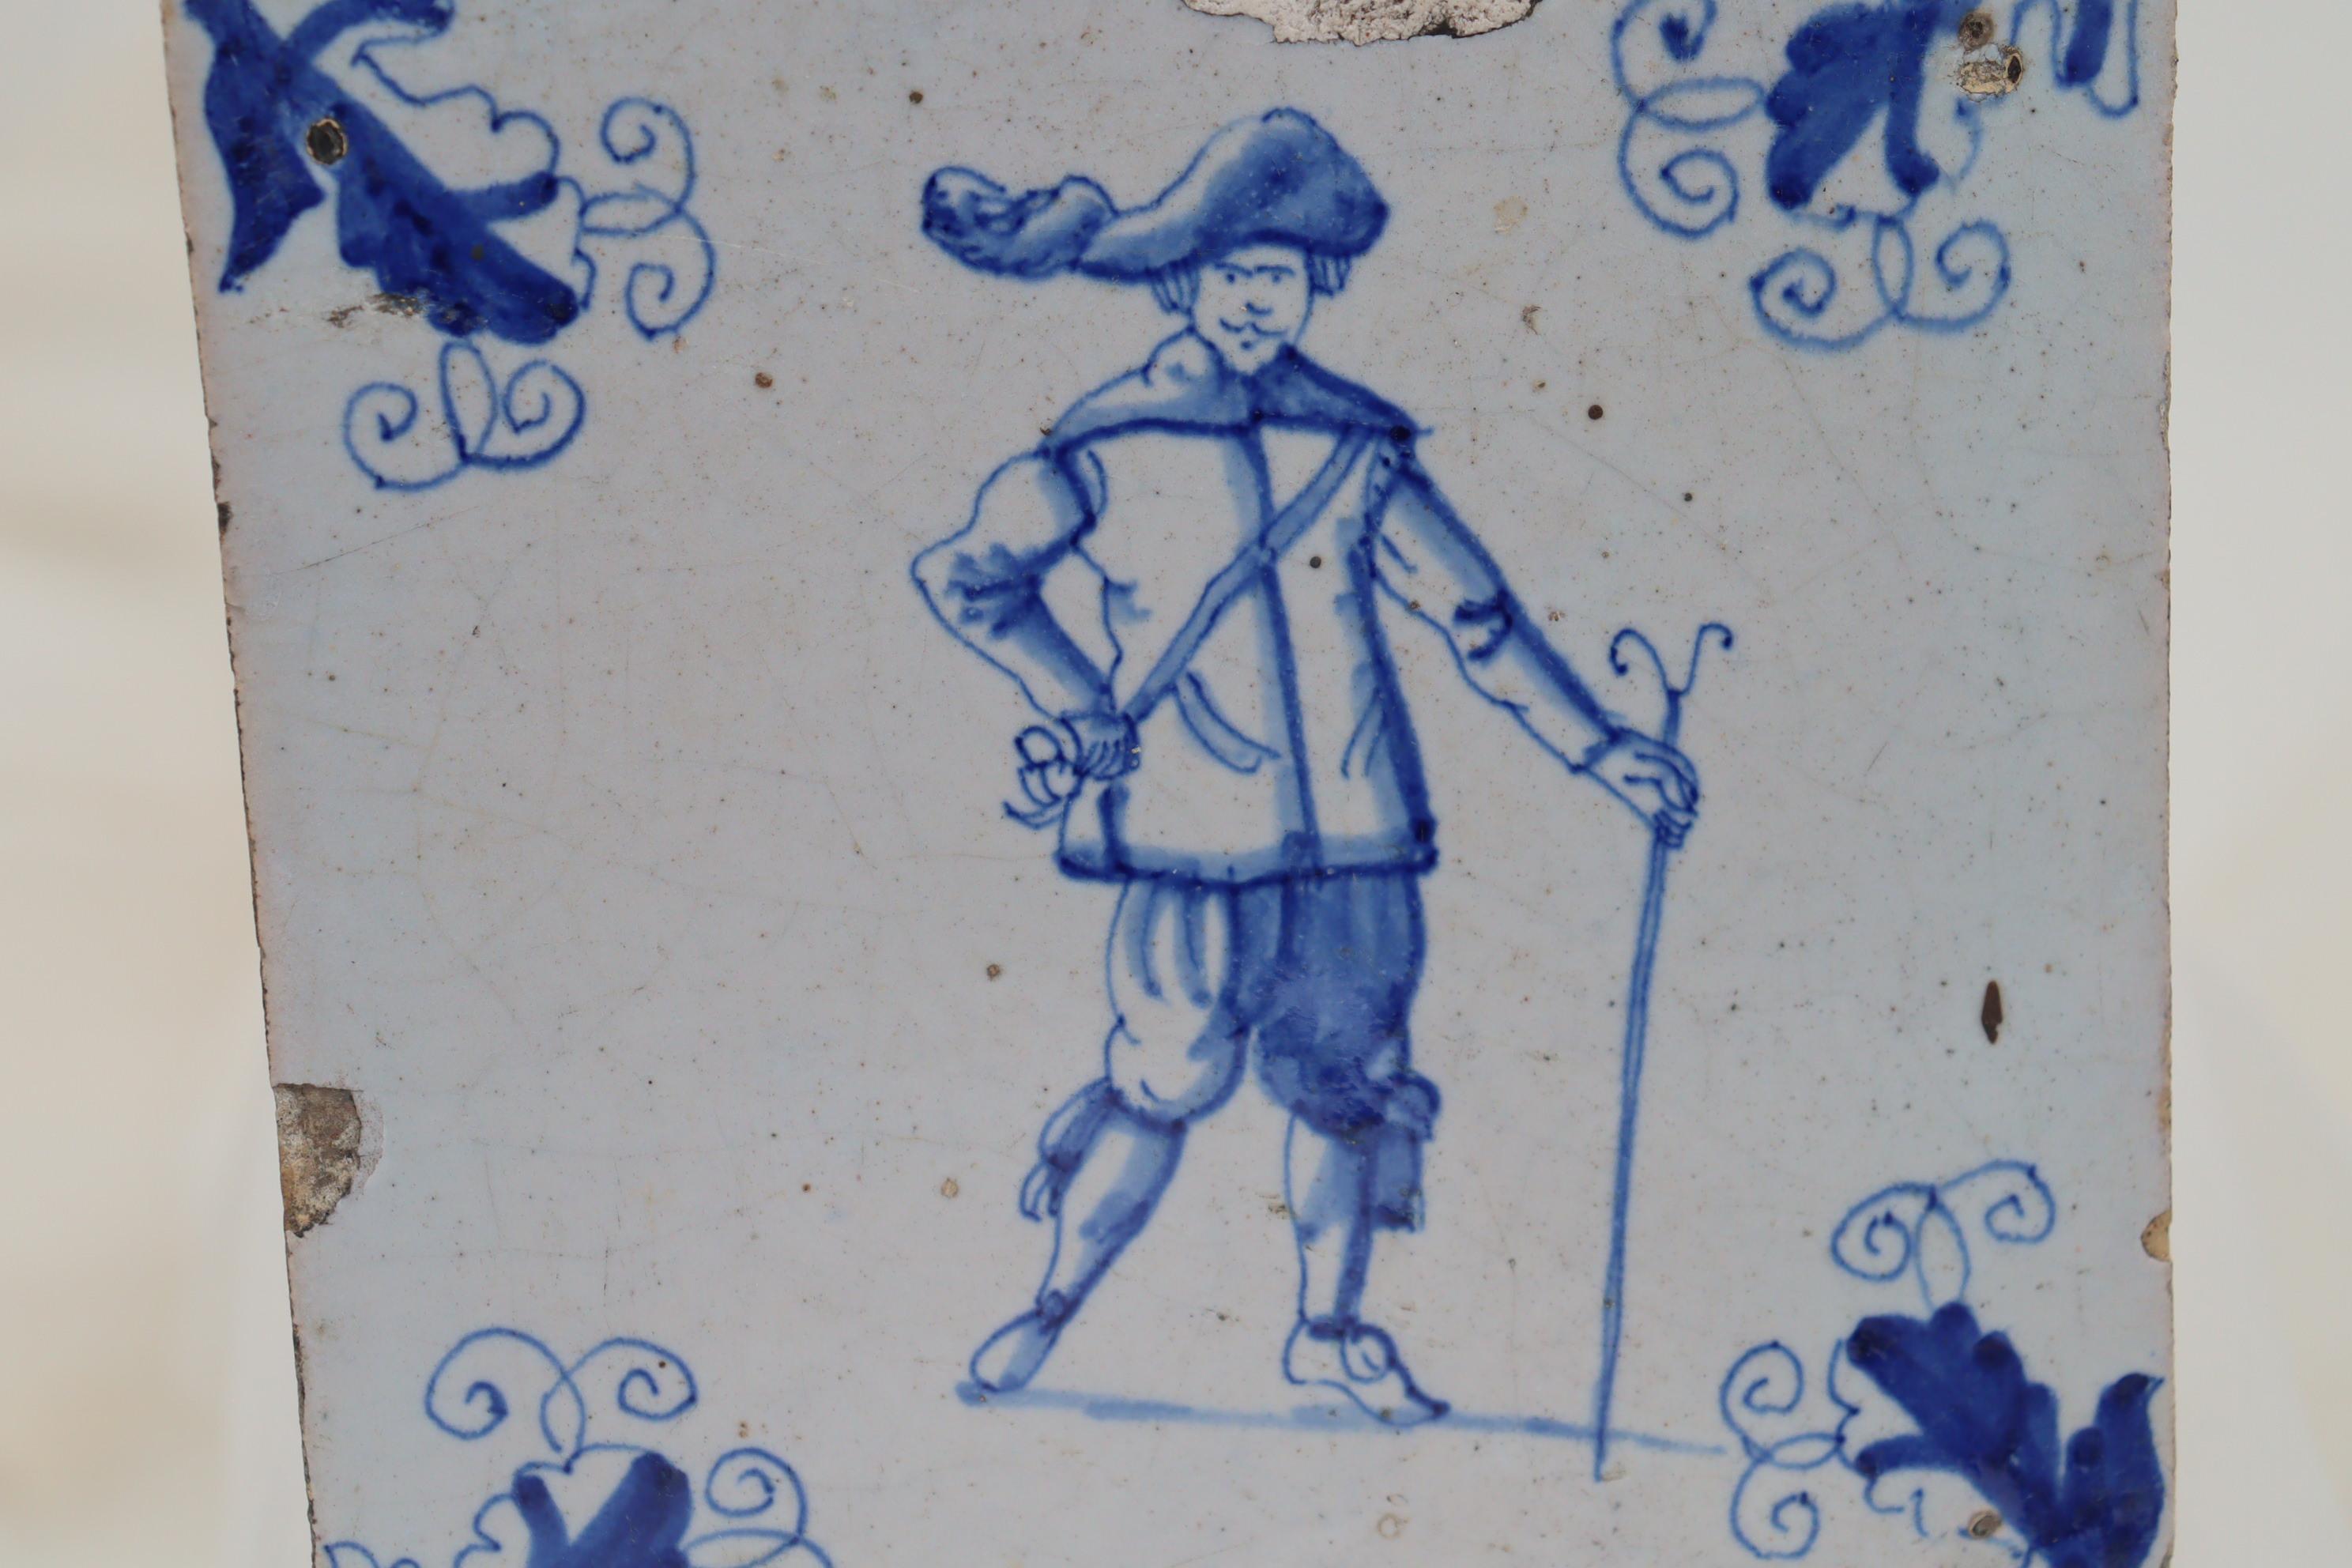 In der Mitte dieser handbemalten holländischen Delft-Kachel ist das Porträt eines gut gekleideten Mannes aus dem 17. Jahrhundert abgebildet, der einen Stab oder Stock trägt. An den Ecken befinden sich Rankenblattmotive, und interessanterweise ist